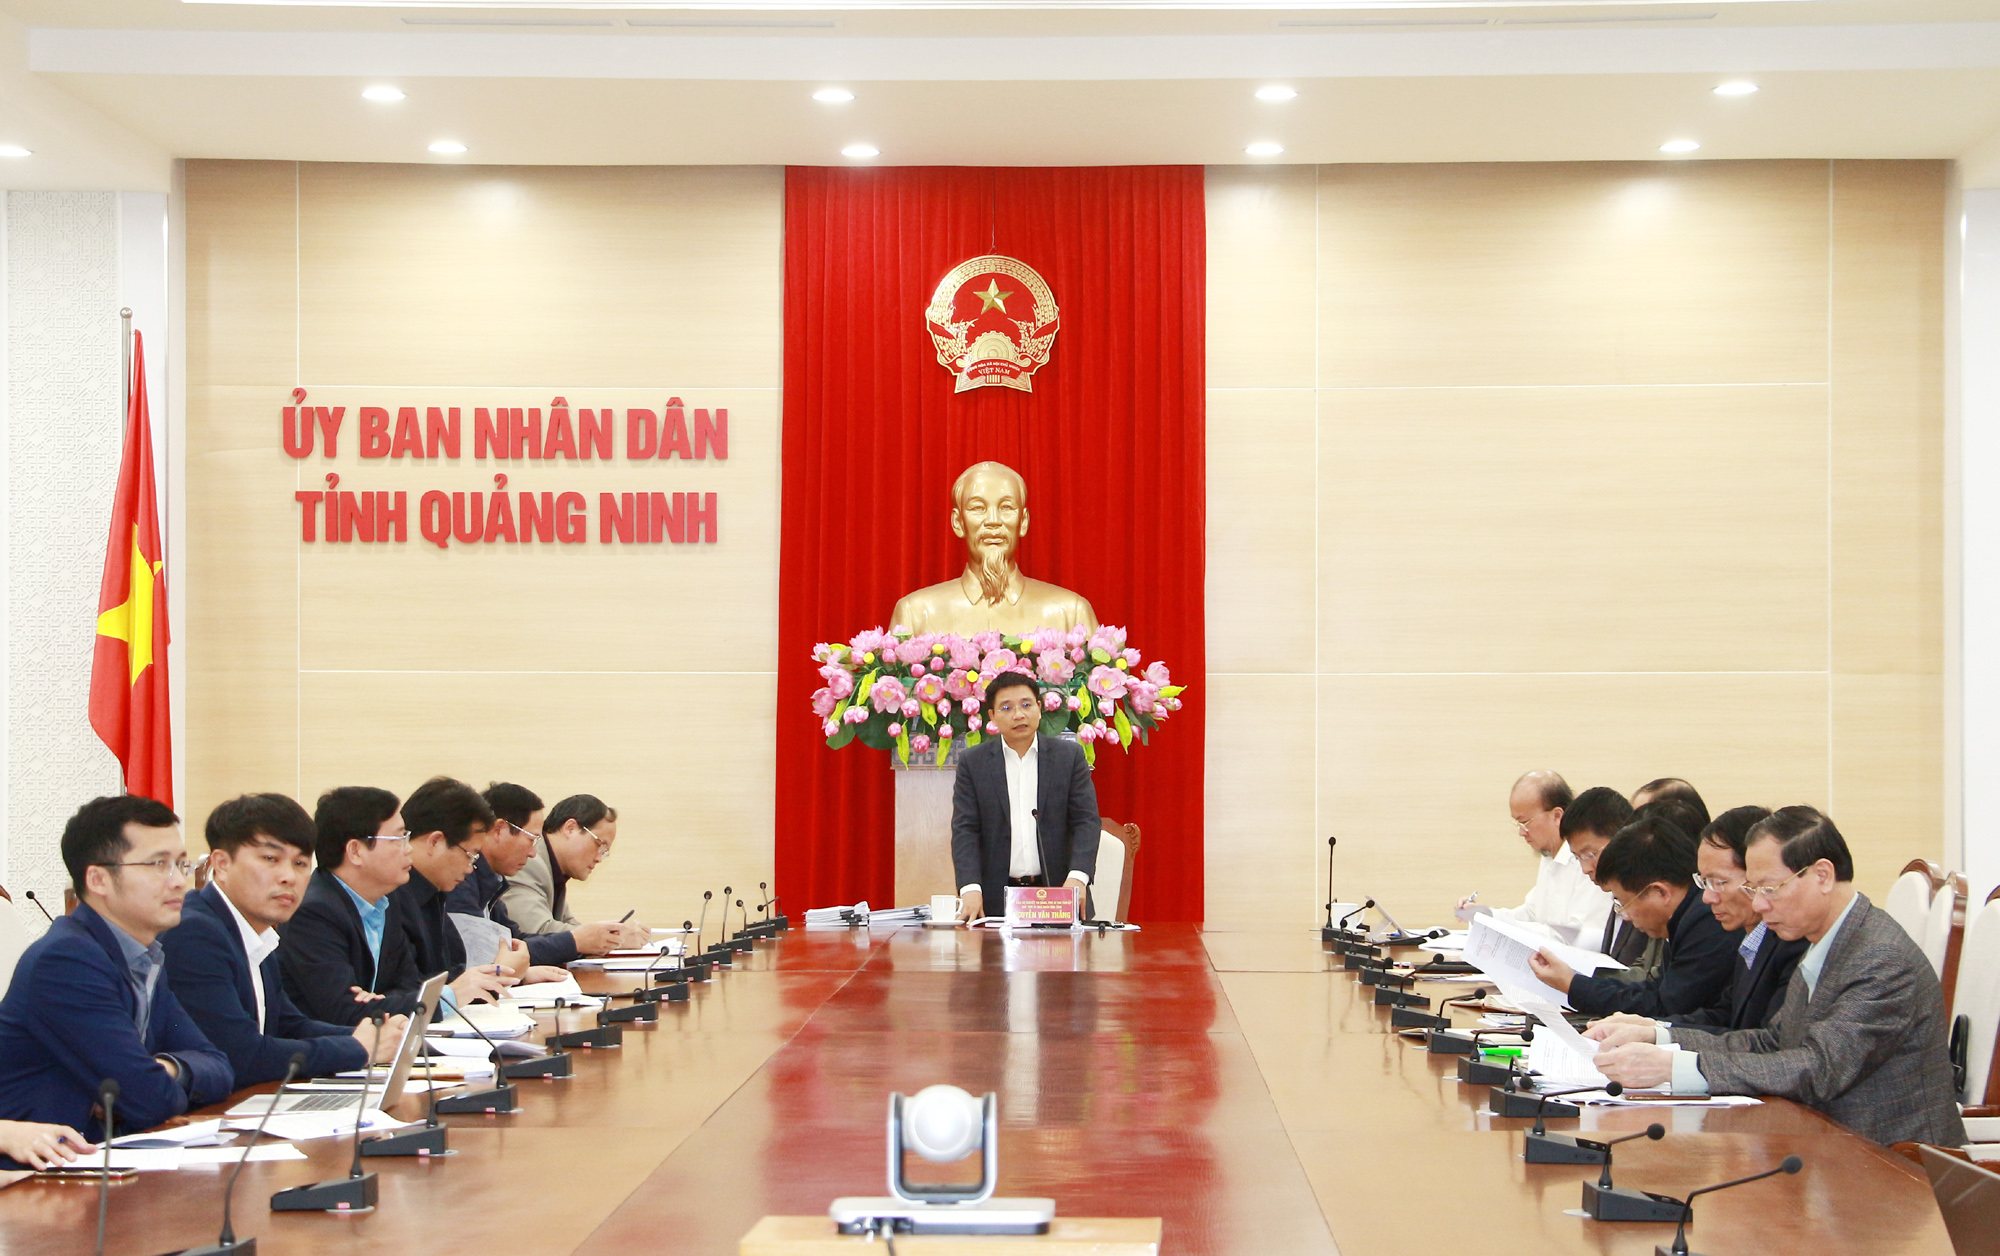 Đồng chí Nguyễn Văn Thắng, Phó Bí thư Tỉnh ủy, Chủ tịch UBND tỉnh, chủ trì cuộc họp.